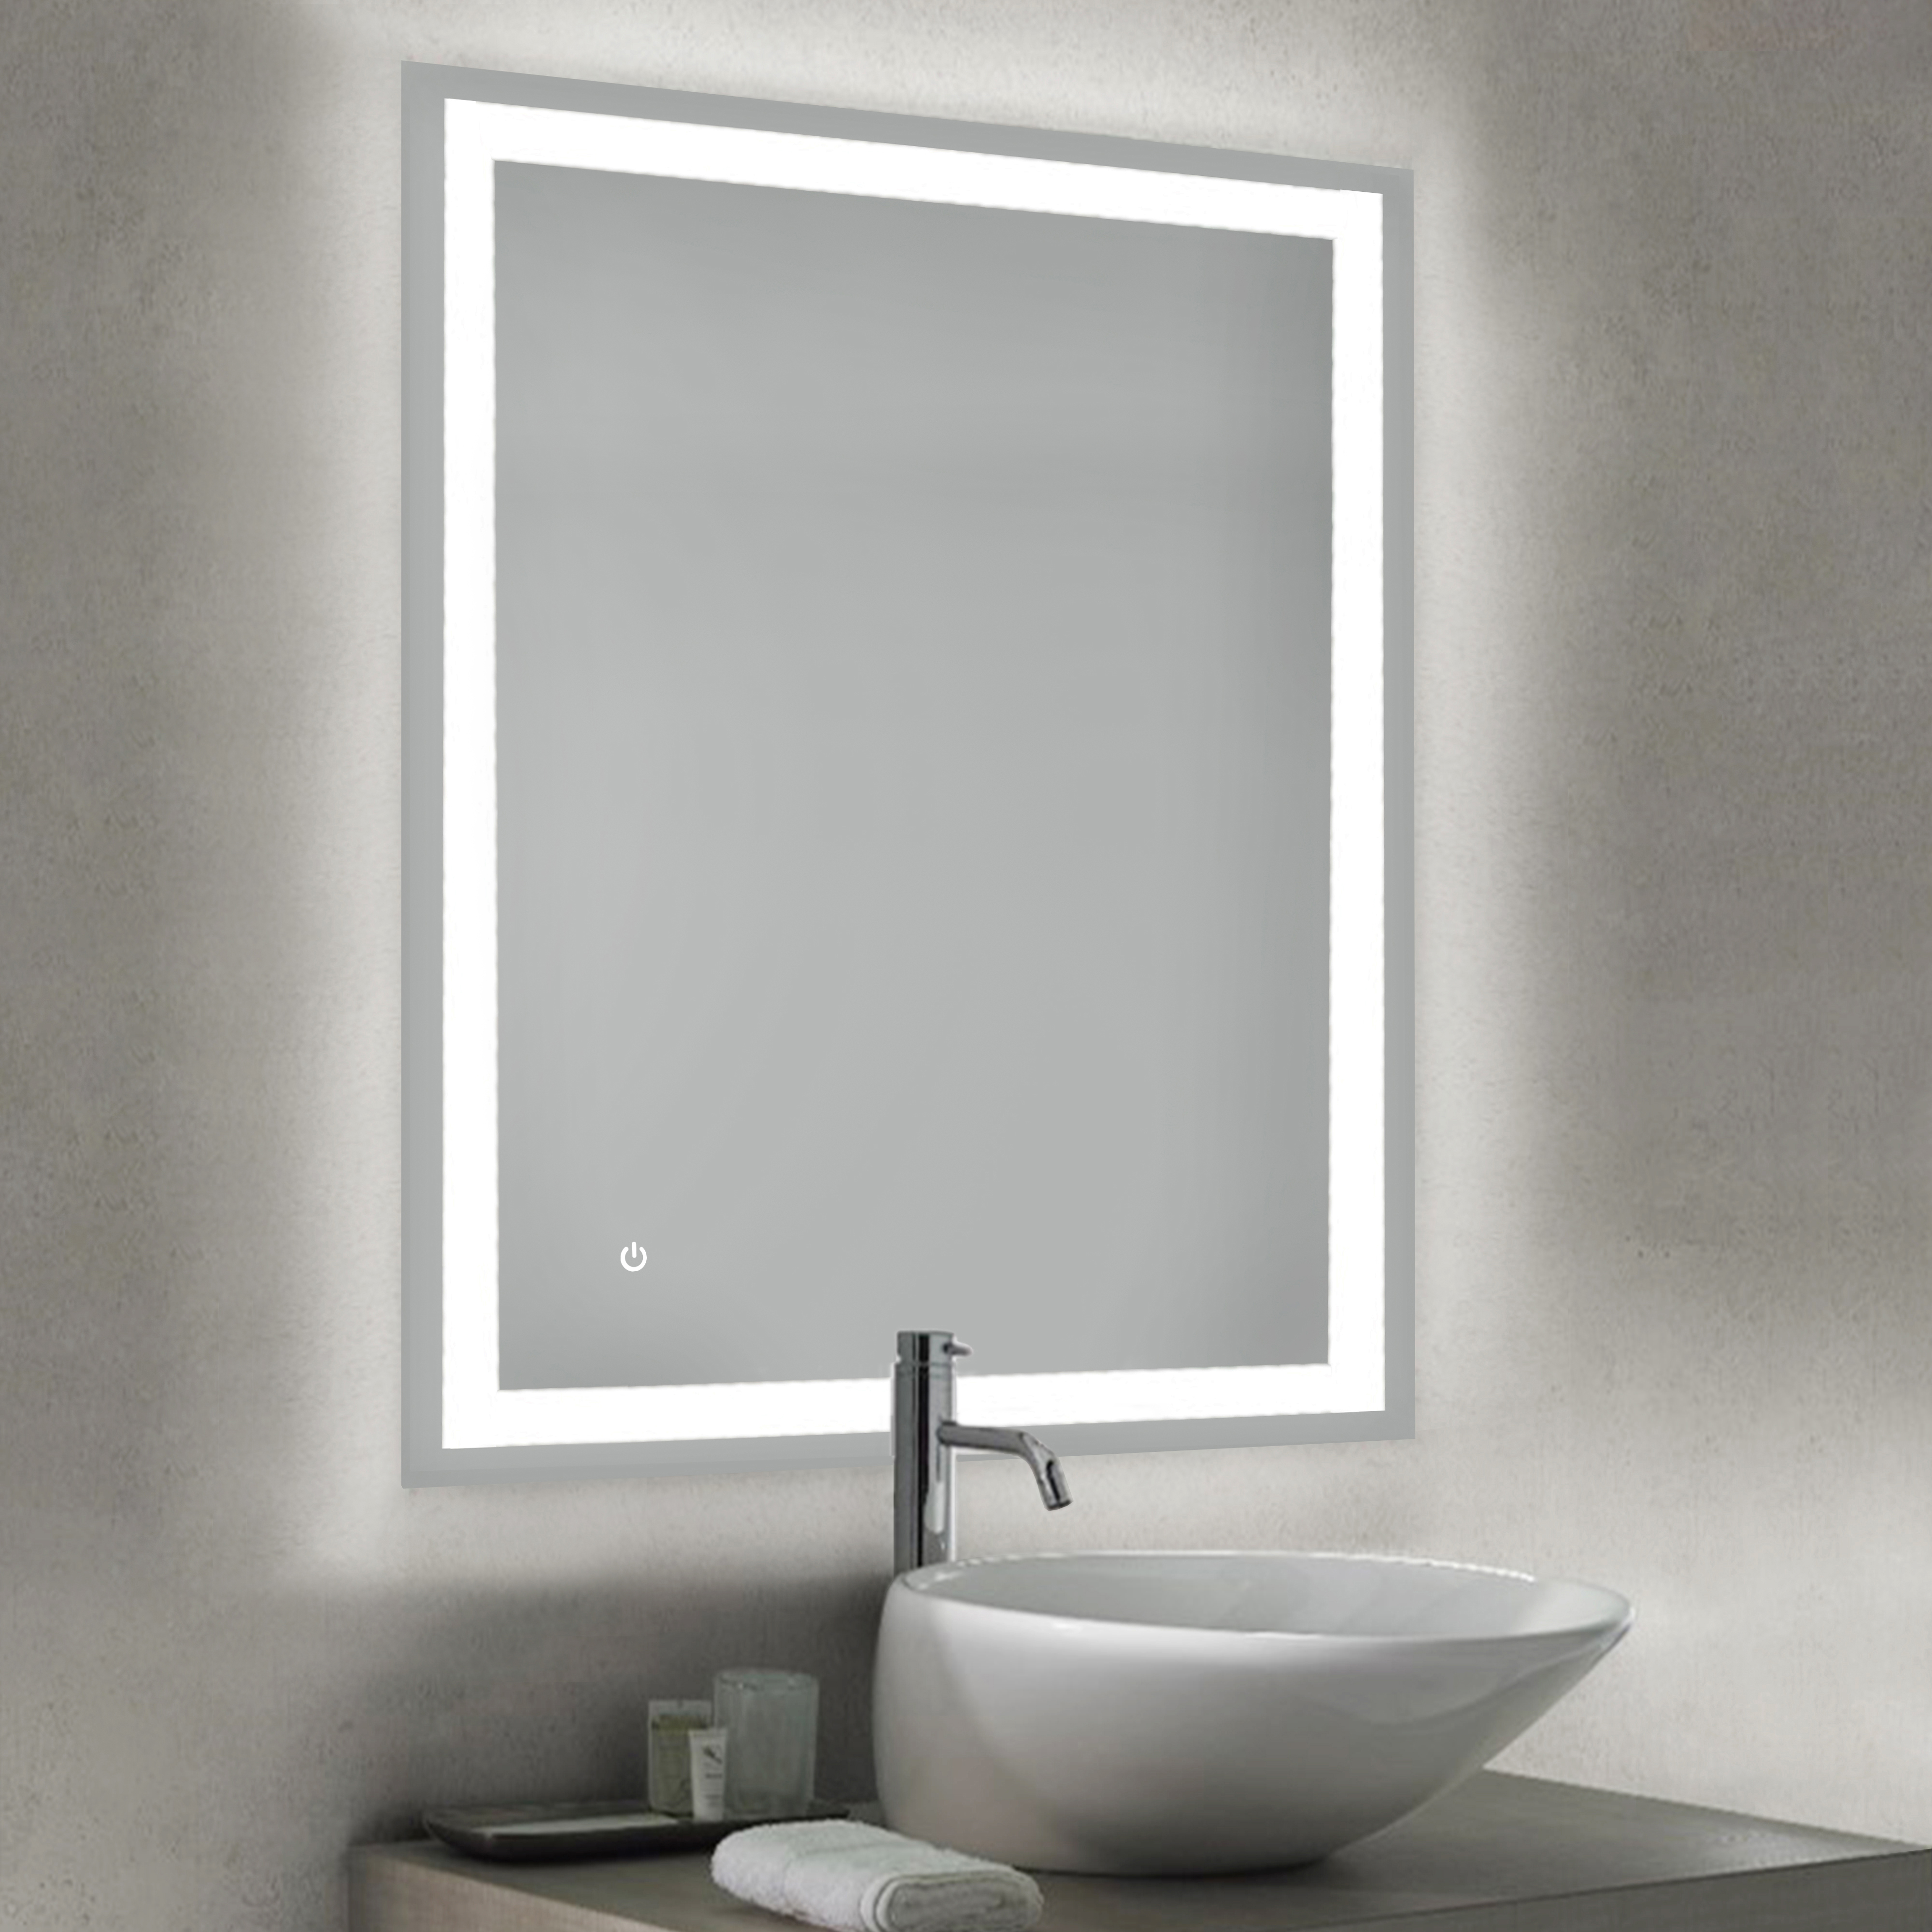  Miroir de salle de bain Hercule avec eclairage LED frontal et decoratif, rectangular 600 x 800 mm, AC 230V 50Hz, 45 W, Aluminium et Verre.